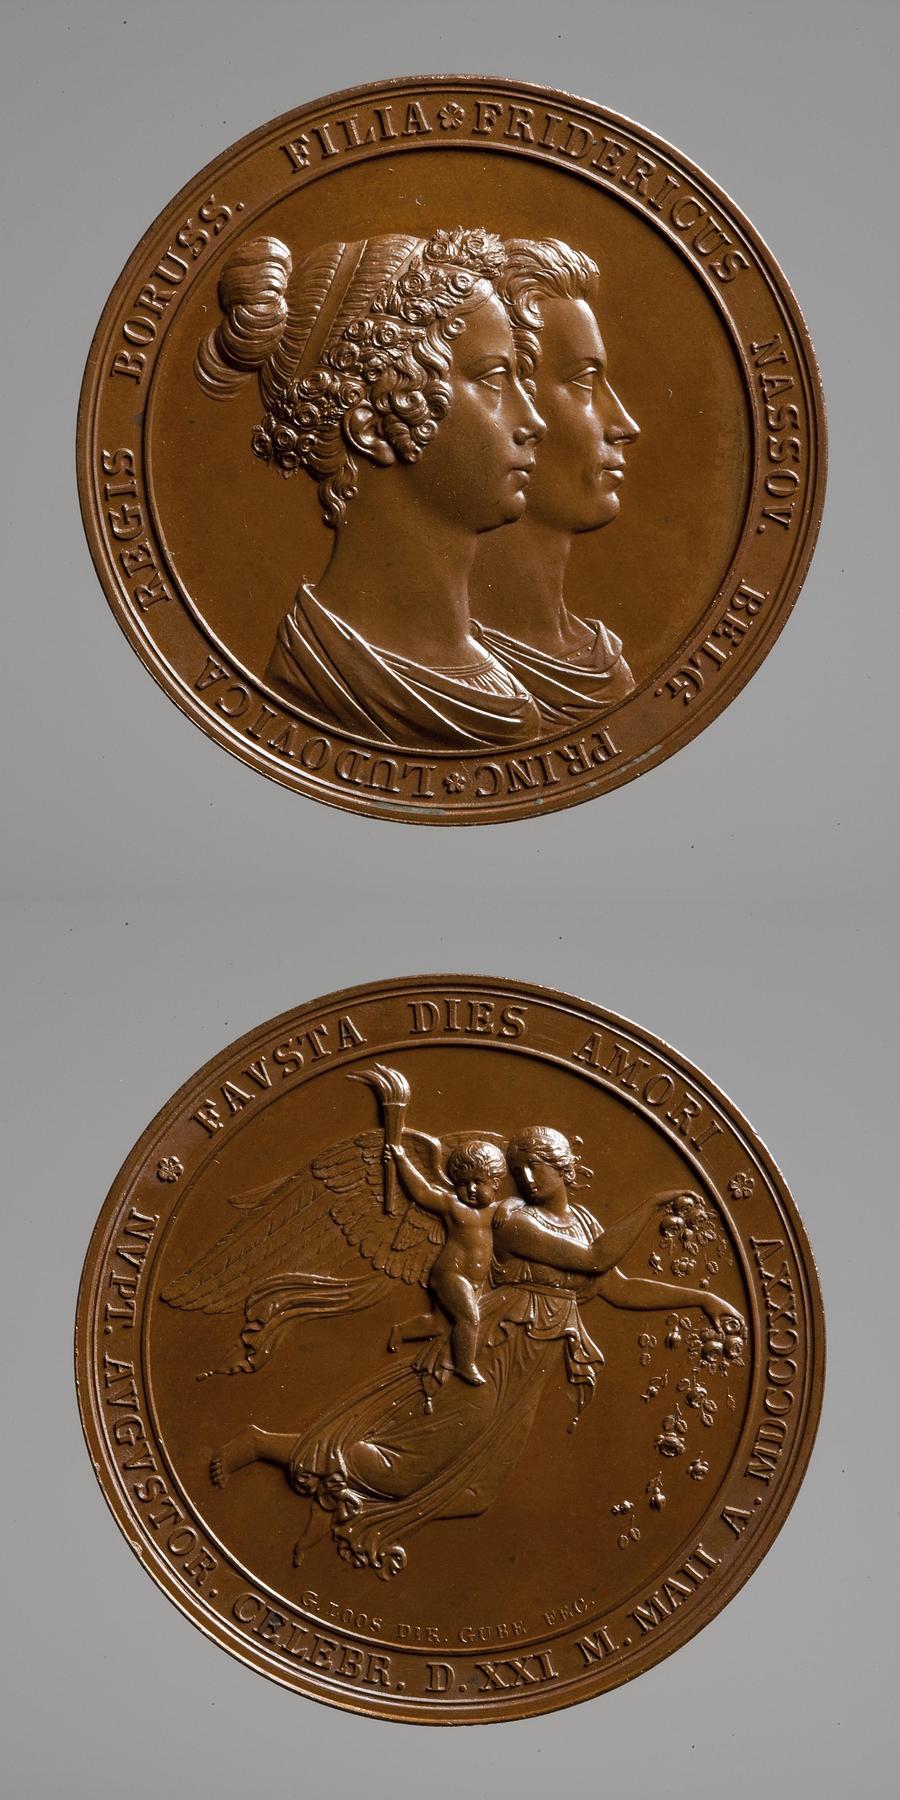 Medaljens forside: Prins Frederik af Nederlandenes og prinsesse Louises bryllup. Medaljens bagside: Dagen, F147